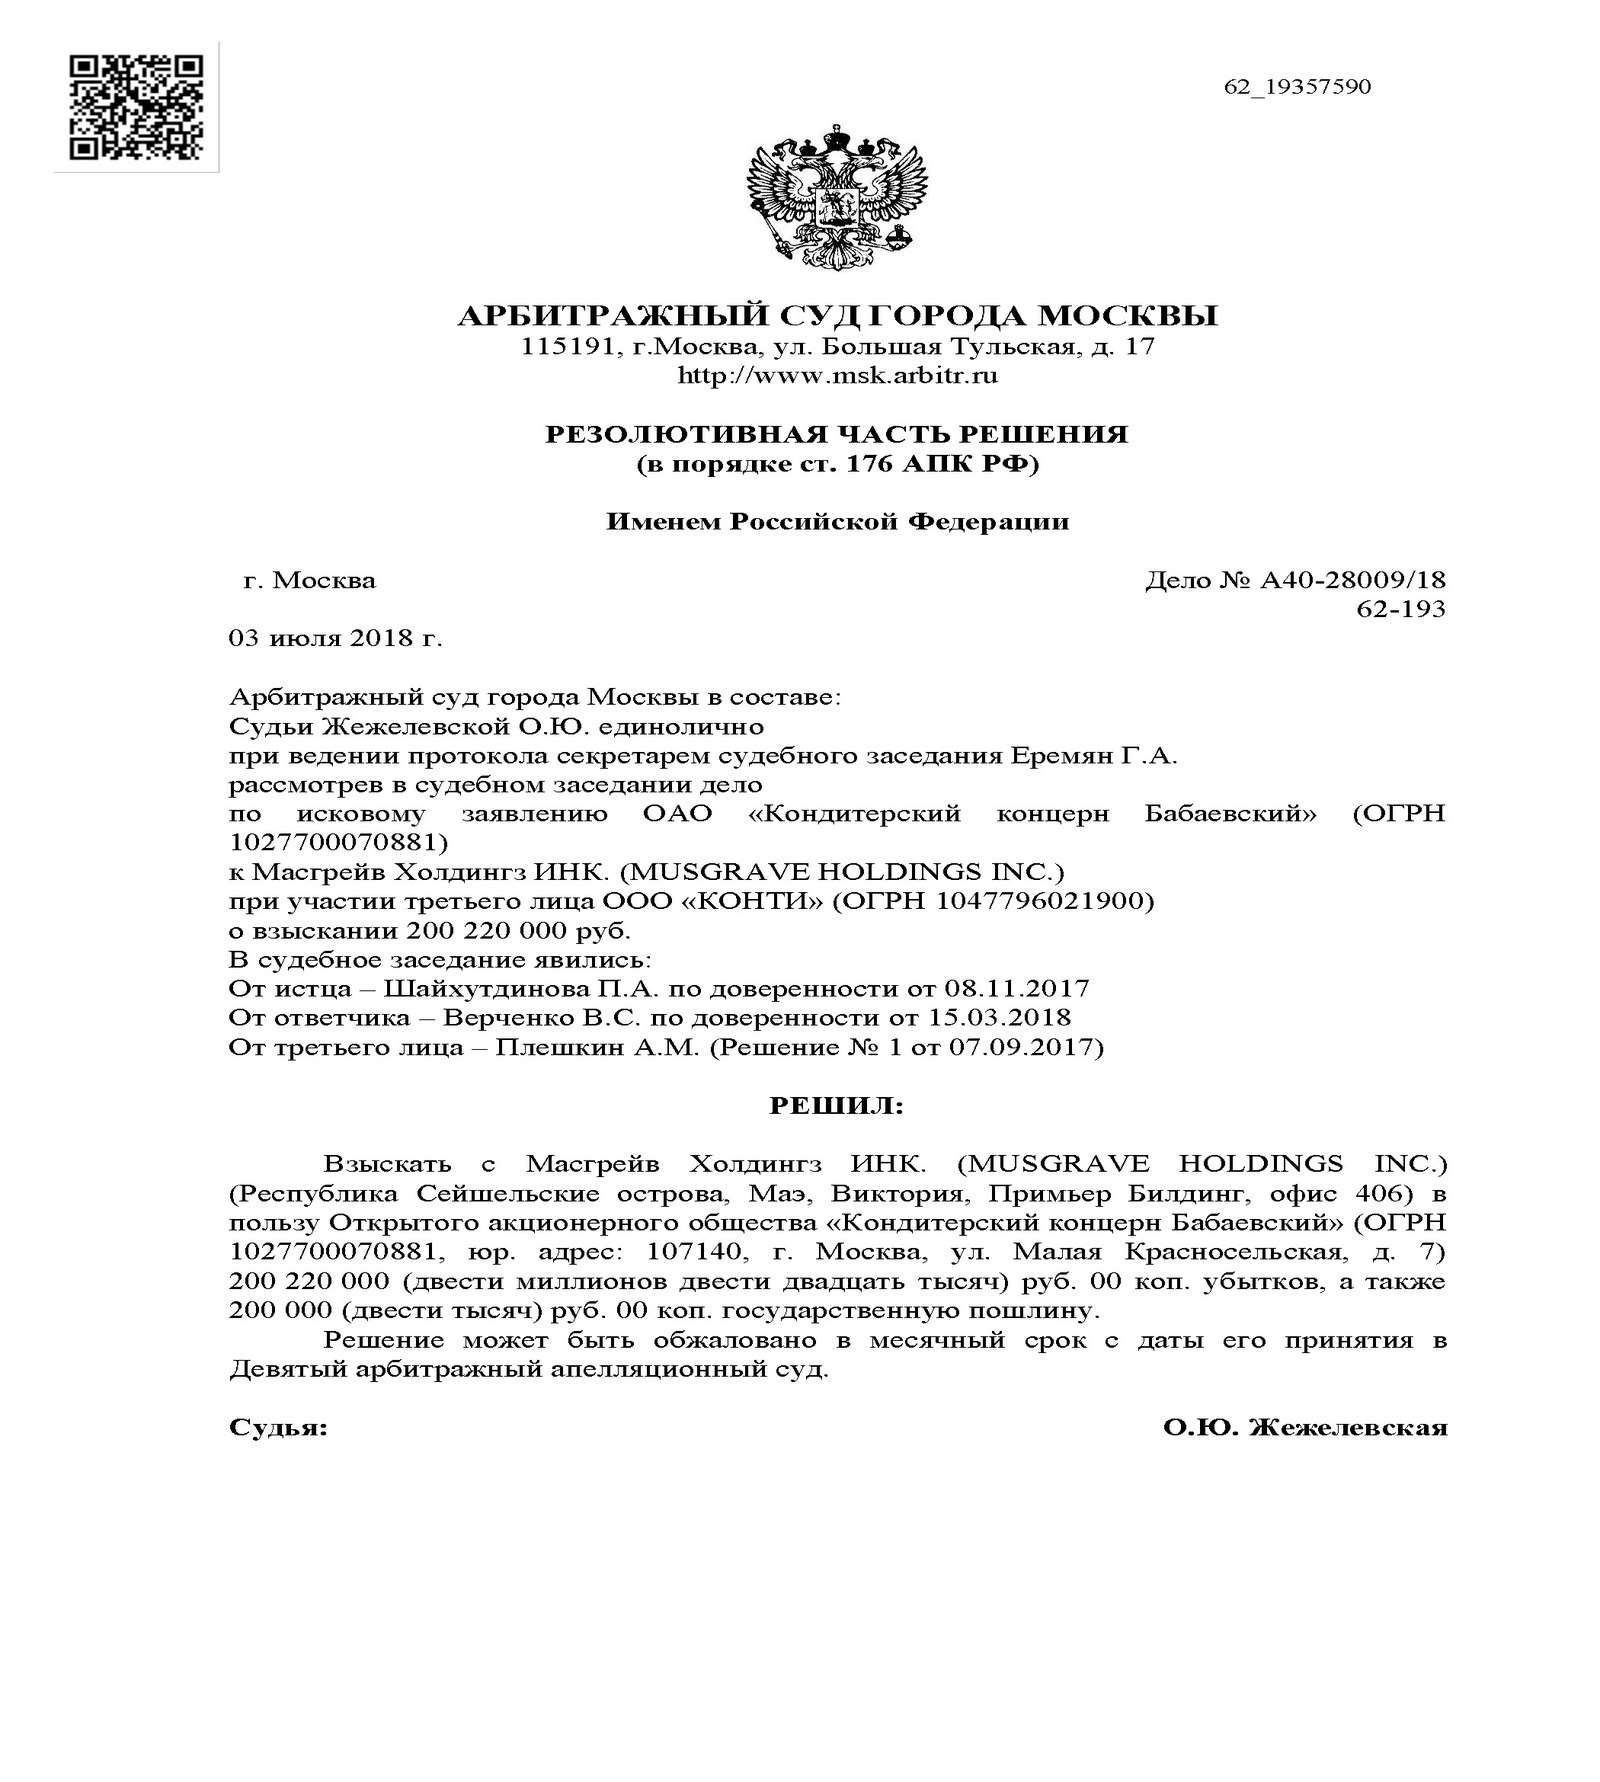 Телефоны арбитражного суда г москвы